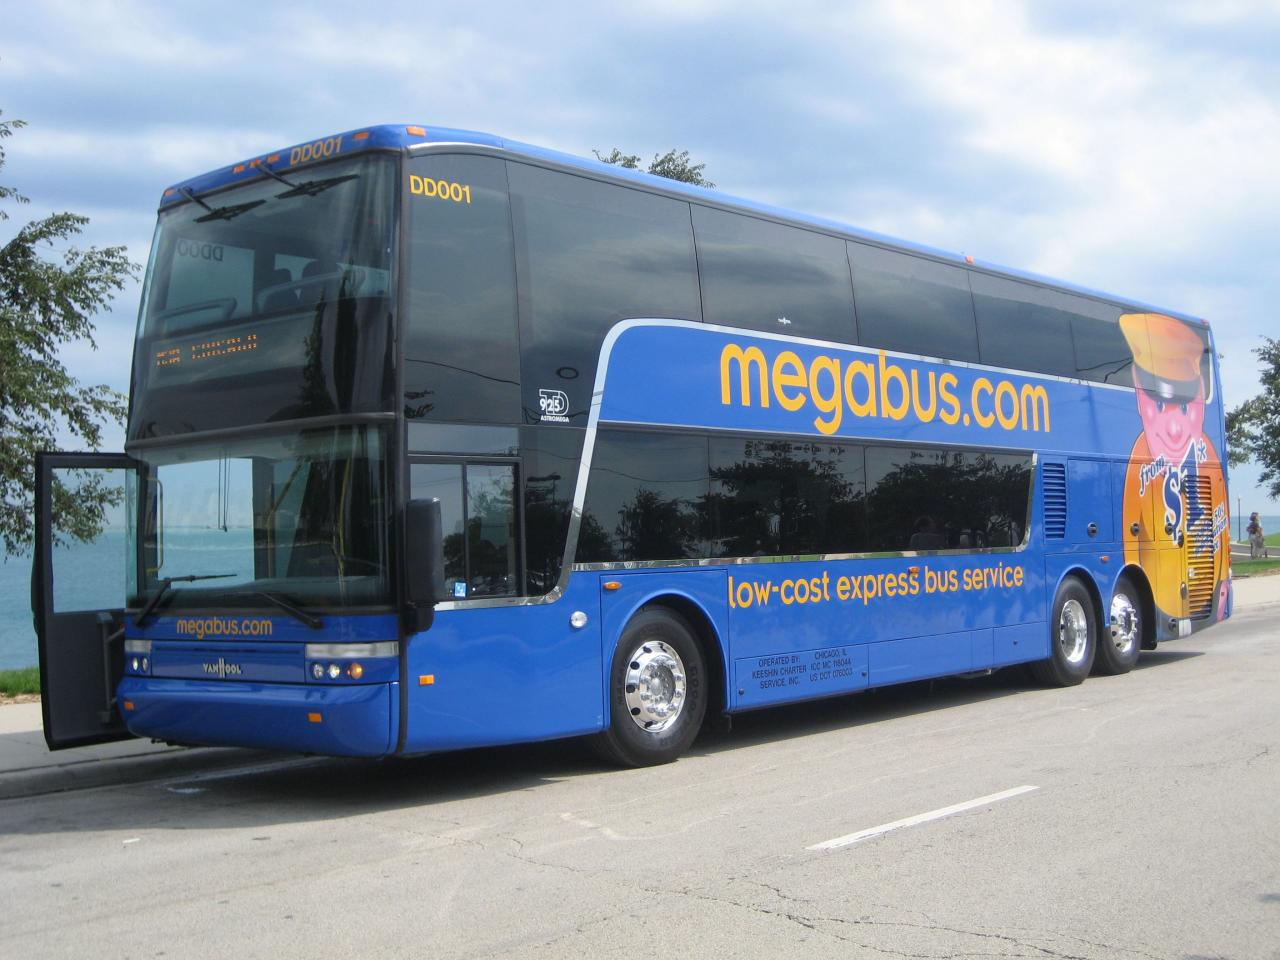 Does megabus uk have an app